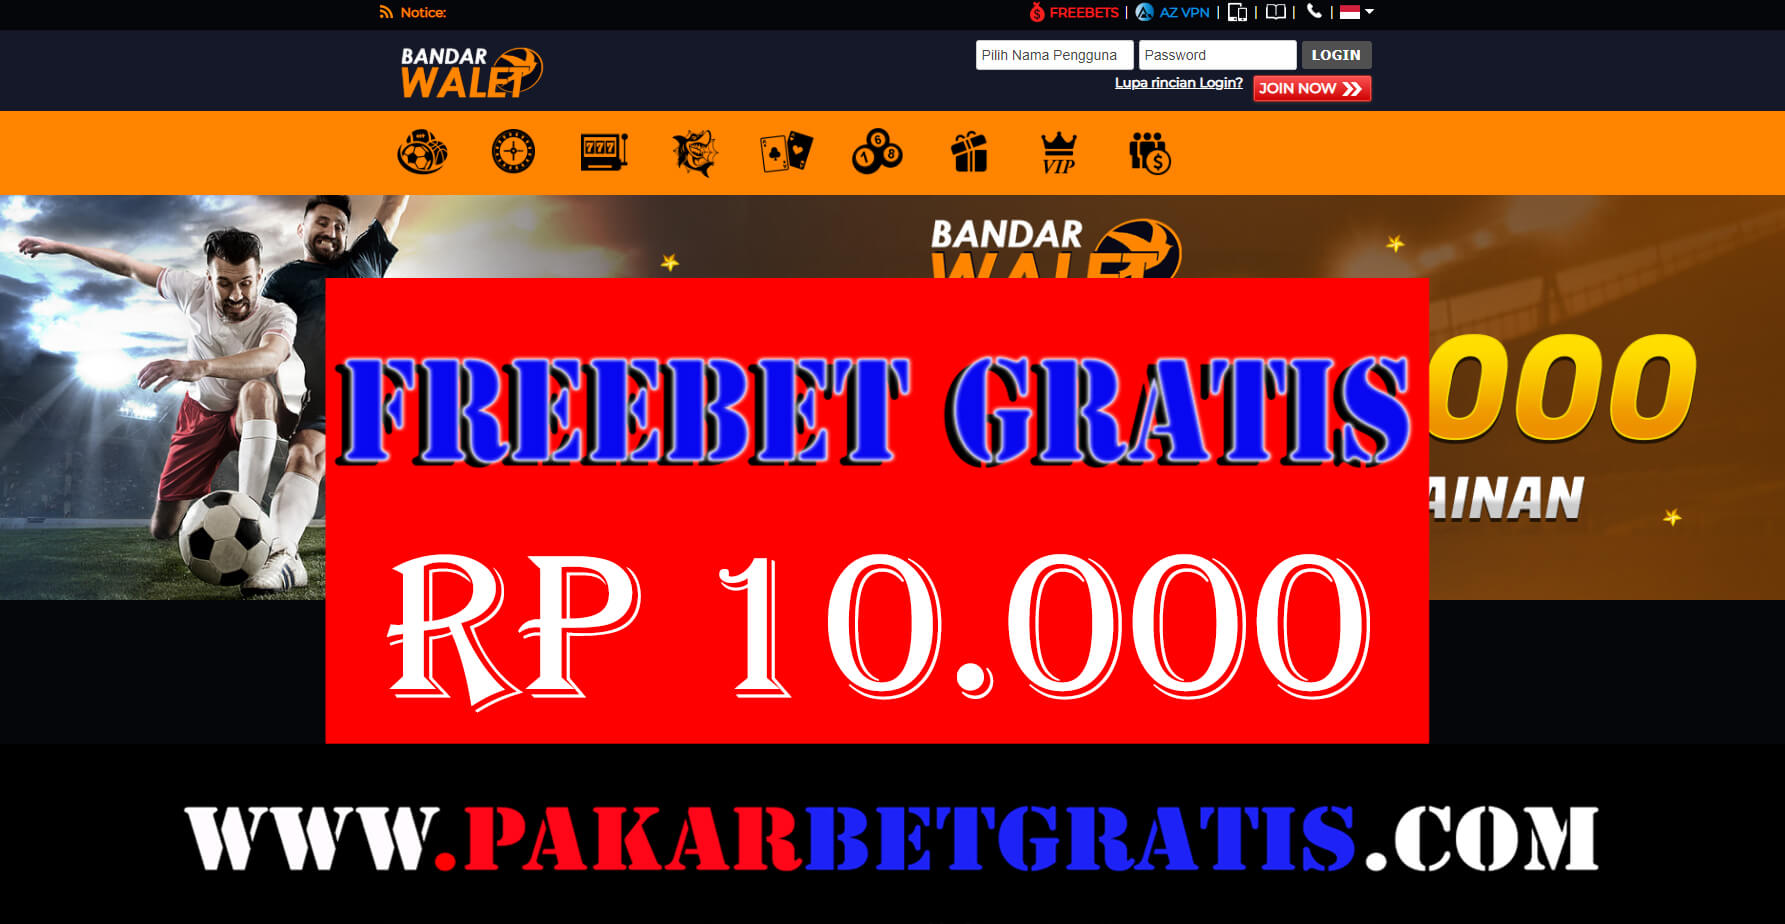 Freebet gratis bandarwalet Rp 10.000 tanpa deposit